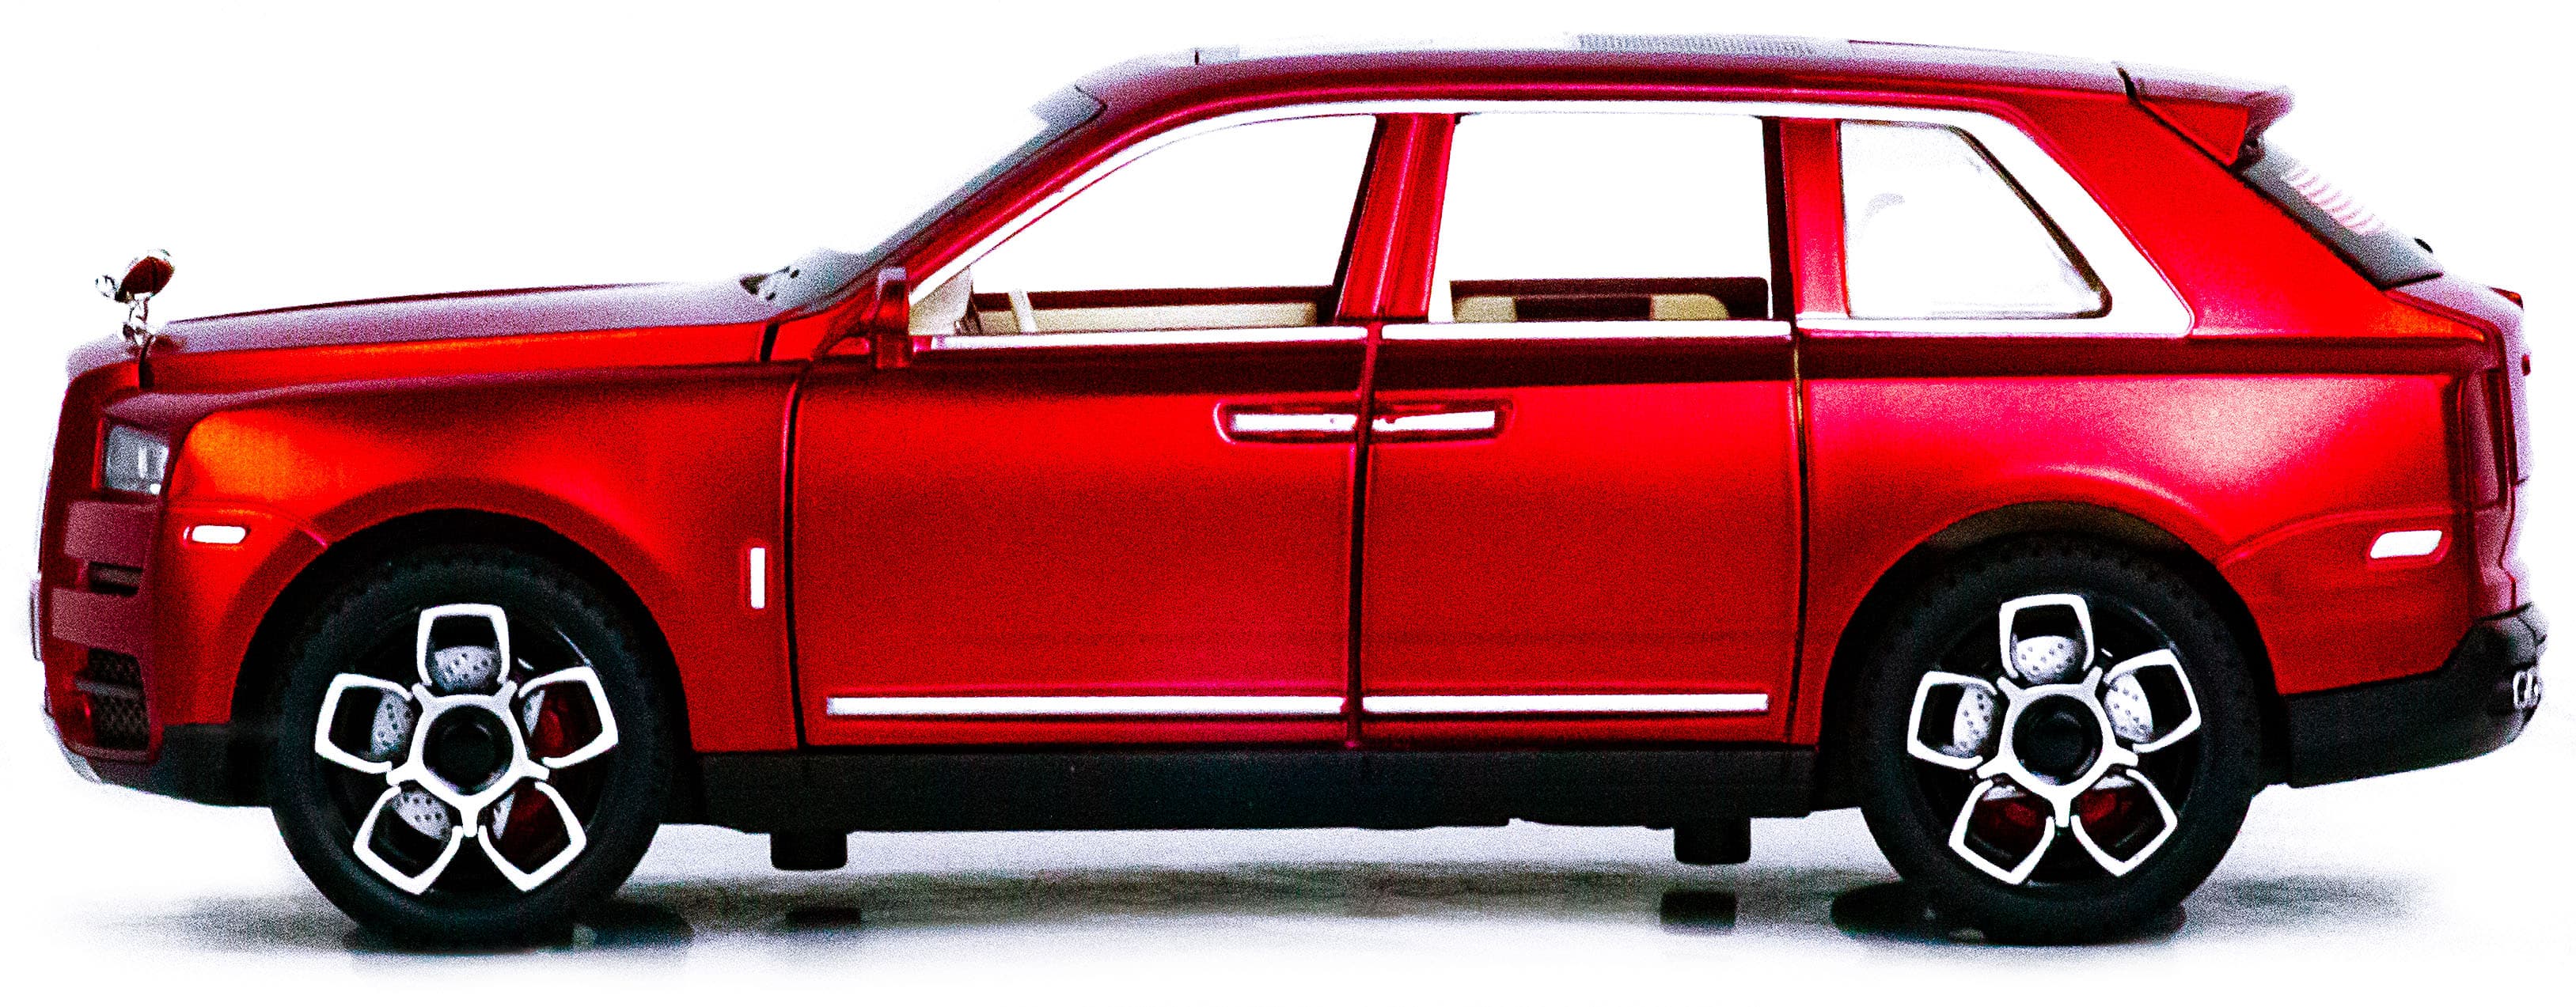 Металлическая машинка Alloy Model 1:24 «Rolls-Royce Cullinan» 21 см. 5506 инерционная, свет, звук / Красный